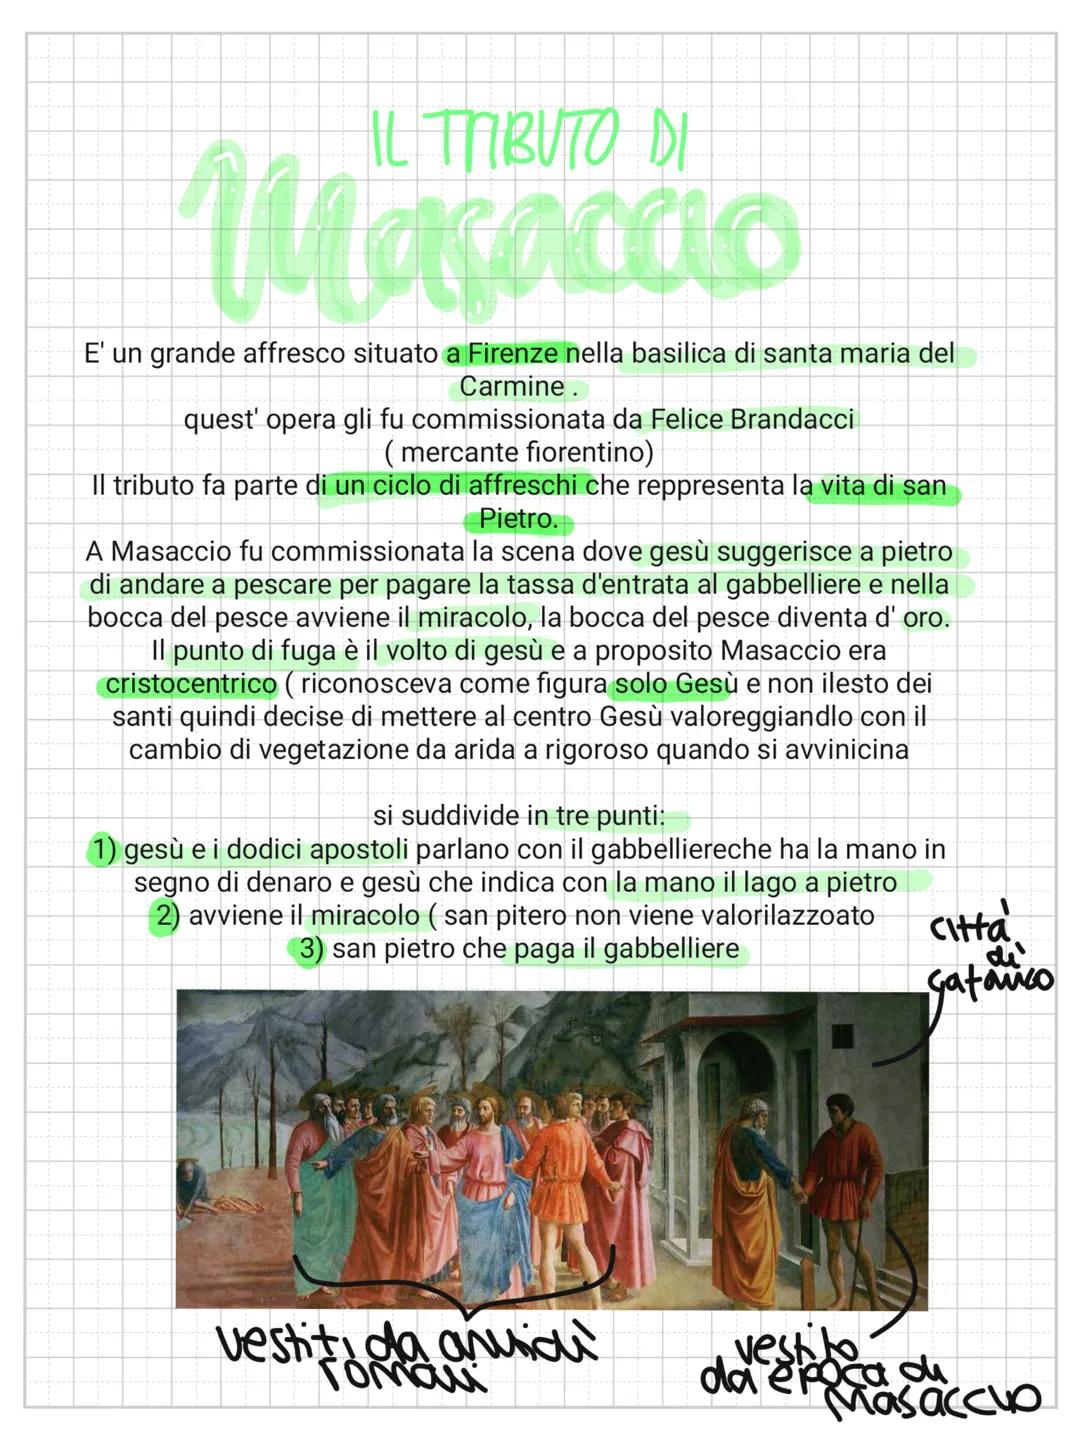 IL TABUTO DI
Masaccio
E' un grande affresco situato a Firenze nella basilica di santa maria del
Carmine.
quest' opera gli fu commissionata d